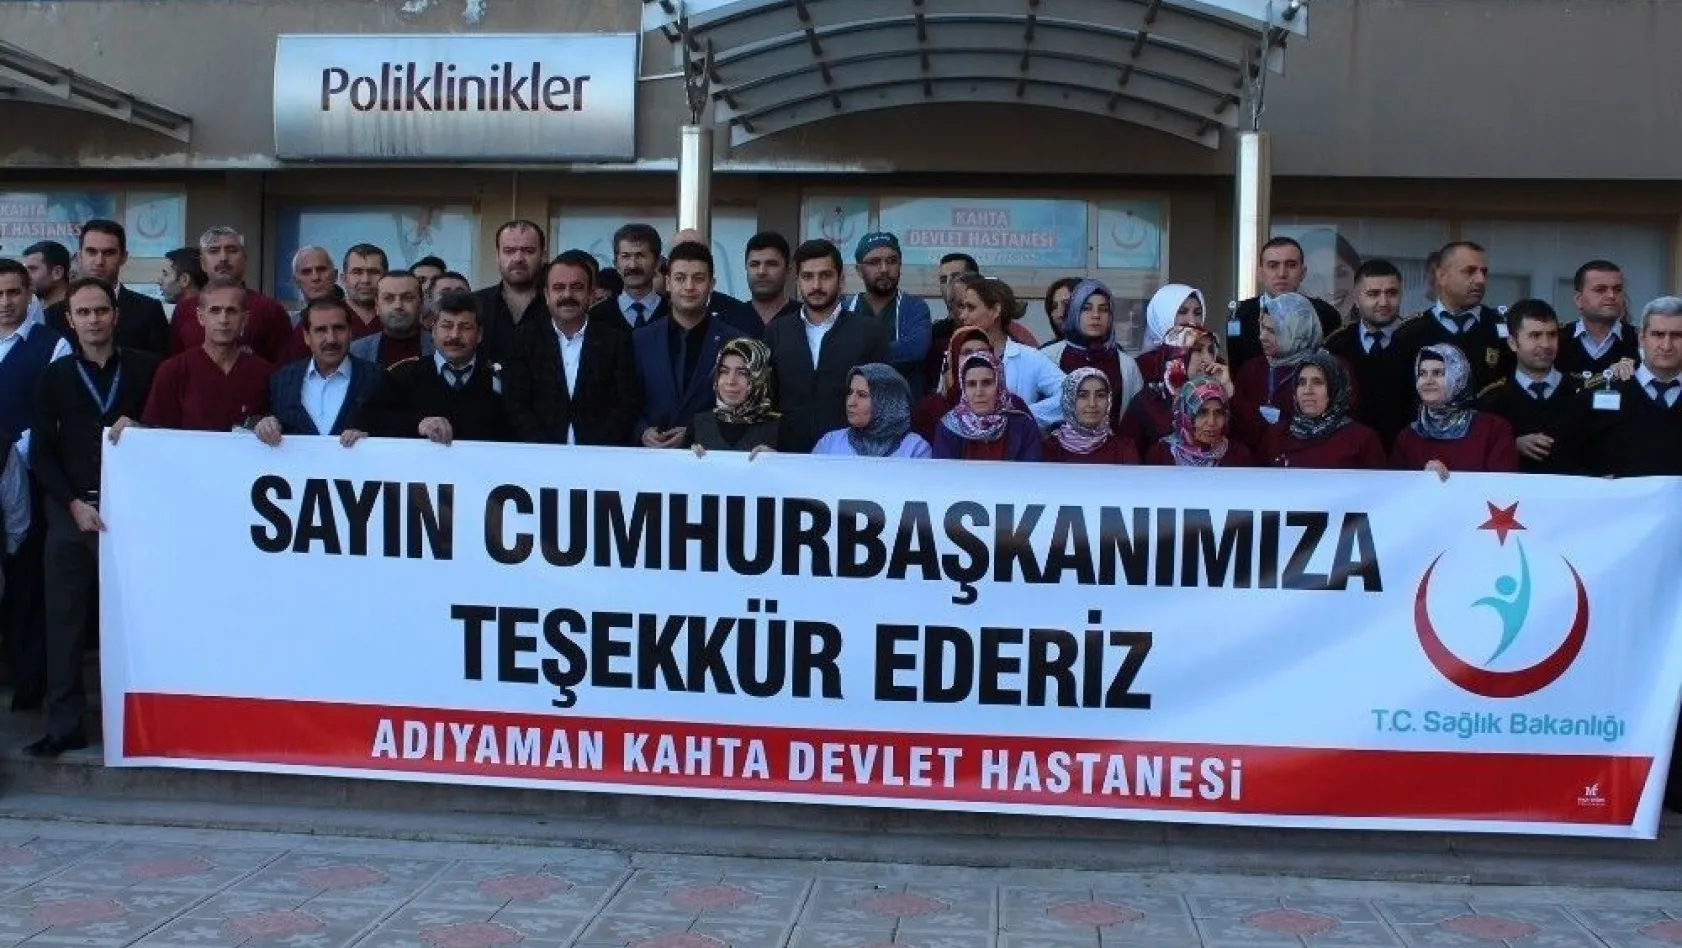 Taşeron işçilerden Cumhurbaşkanı Erdoğan'a teşekkür
